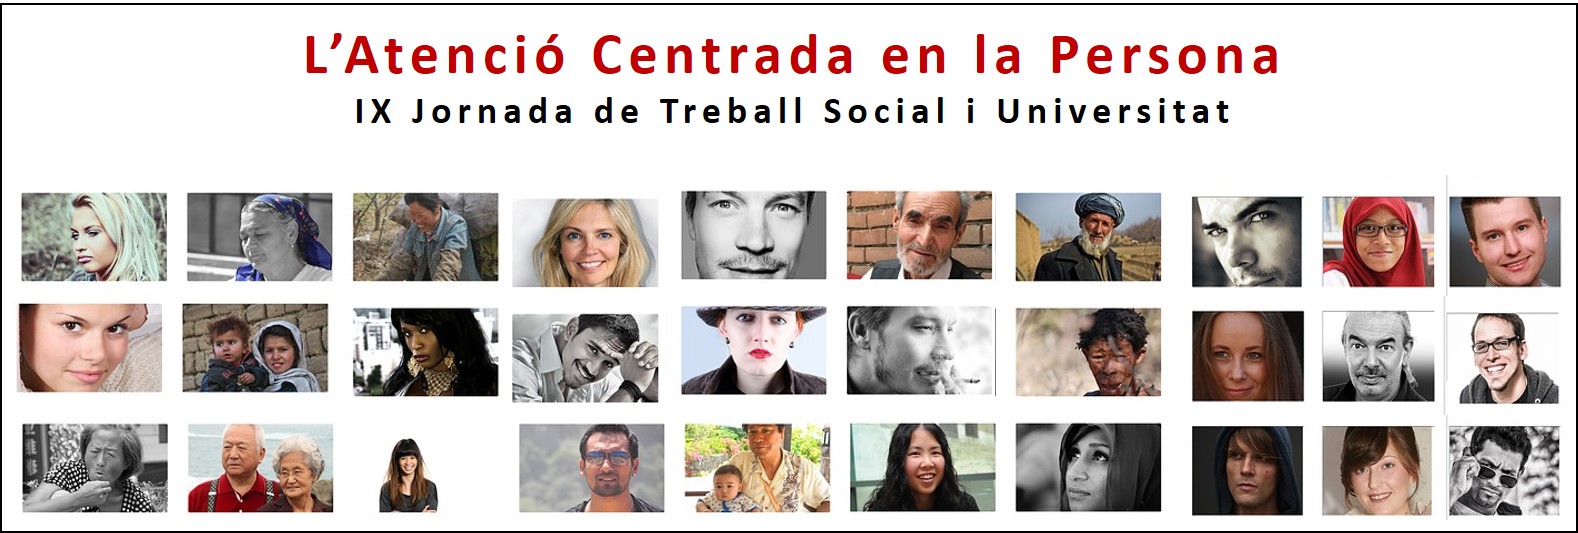 IX Jornada de Treball Social i Universitat: l'atenció centrada en la persona